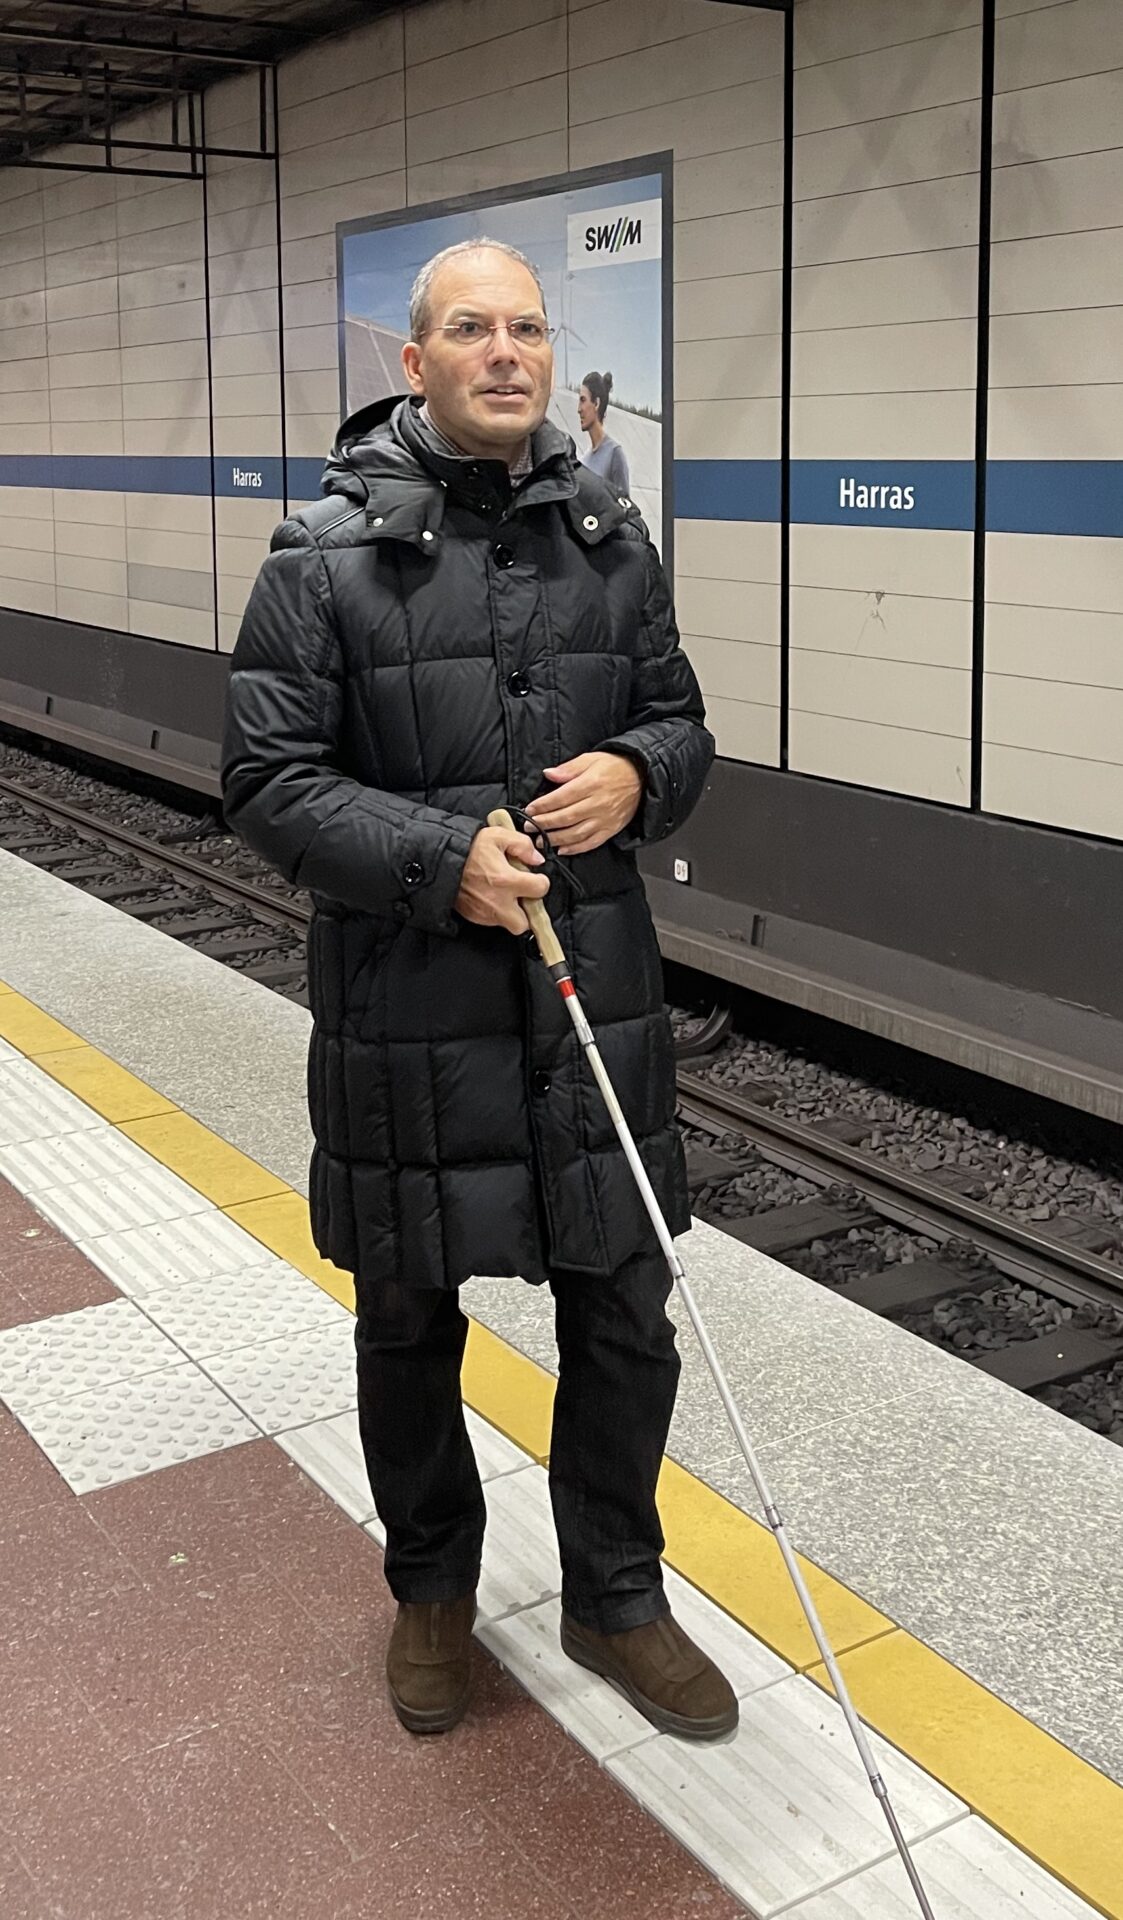 Dr. Stefan Insam steht am Gleis auf dem Leitsysteem am Münchner U-Bahnhof Harras. Er trägt dunkle Winterkleidung und hält in der rechten Hand einen Langstock.